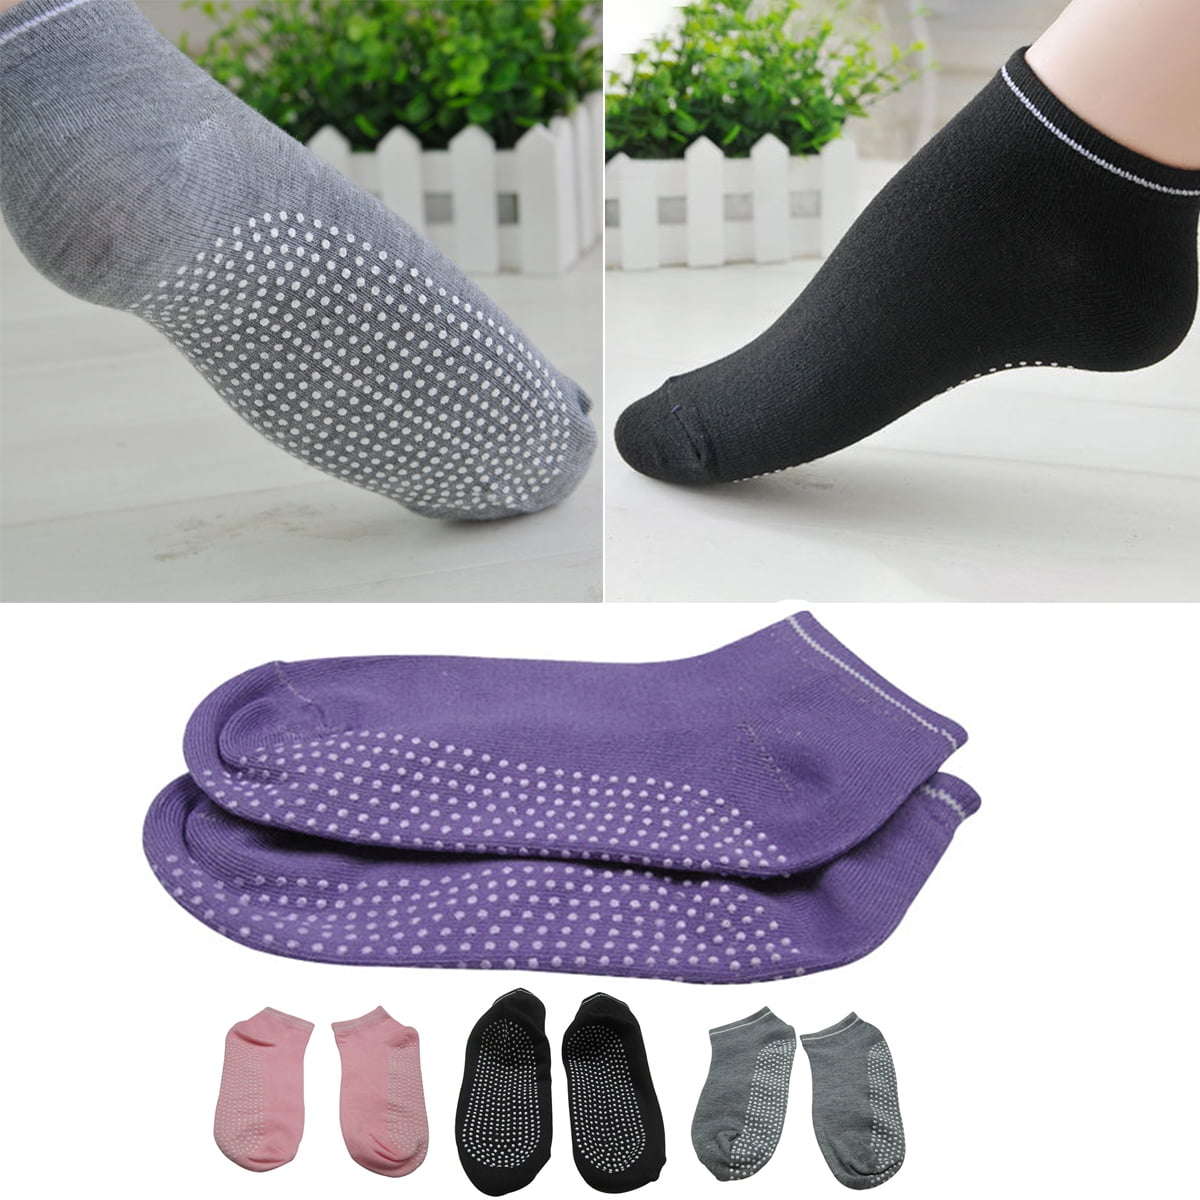 Walbest 1 Pair Full Toe Non Slip Yoga Socks for Women, Anti-Skid Socks ...